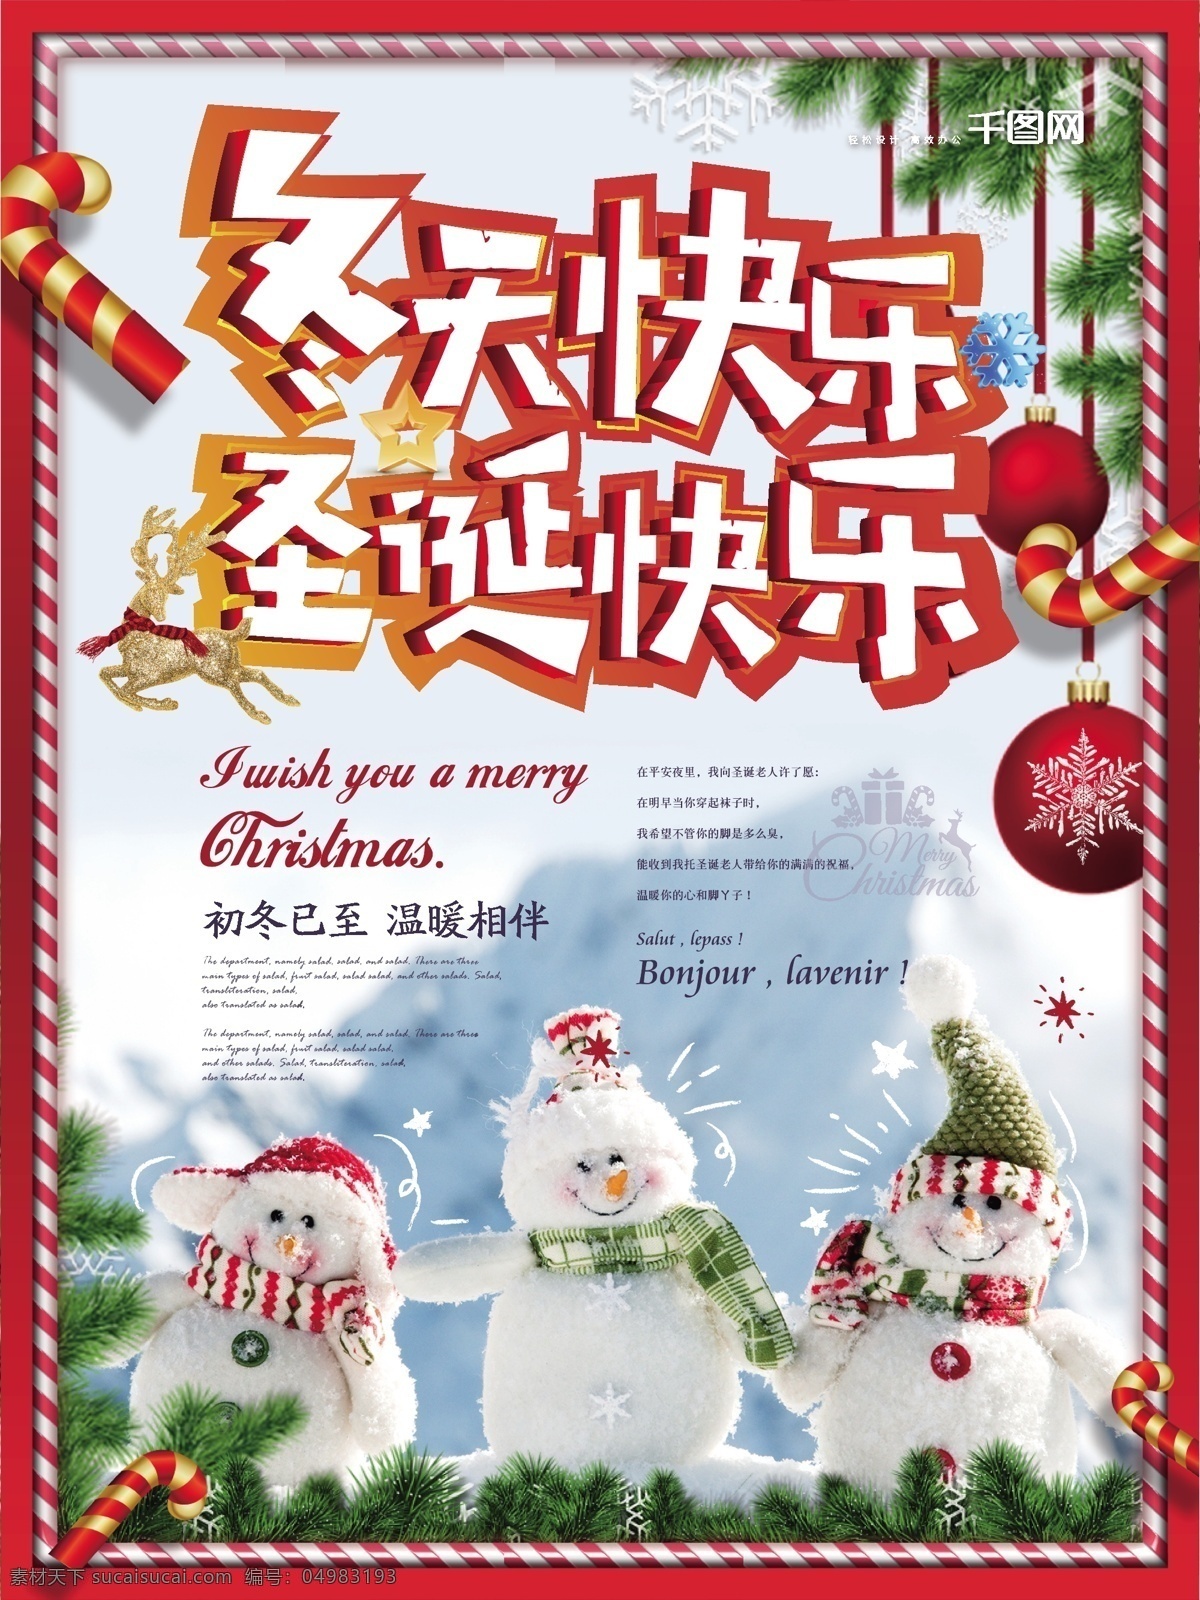 简约 清新 冬天 快乐 圣诞快乐 海报 简约风 雪景 雪人 圣诞 冬日氛围 冬天快乐